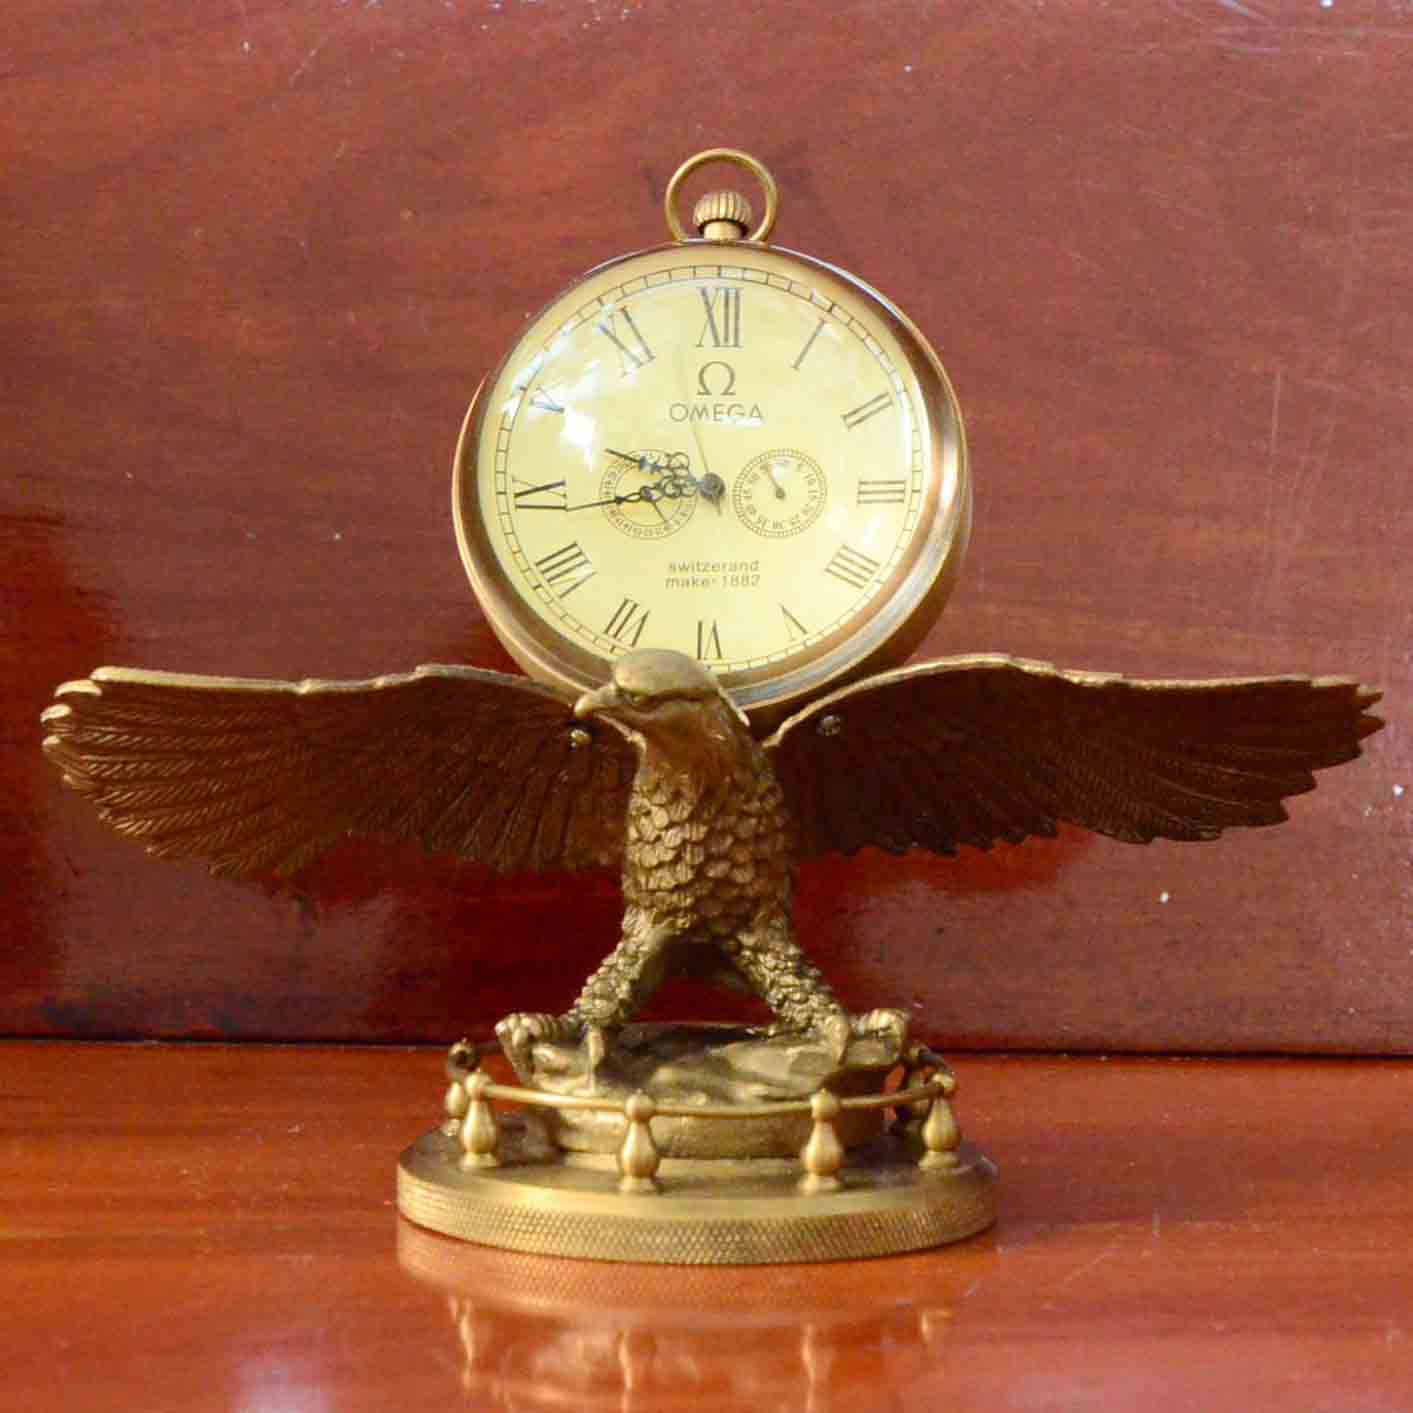 นาฬิกาตั้งโต๊ะทองเหลืองรูปนกอินทรีย์งานเก่า OMEGA Switzerand make-1882